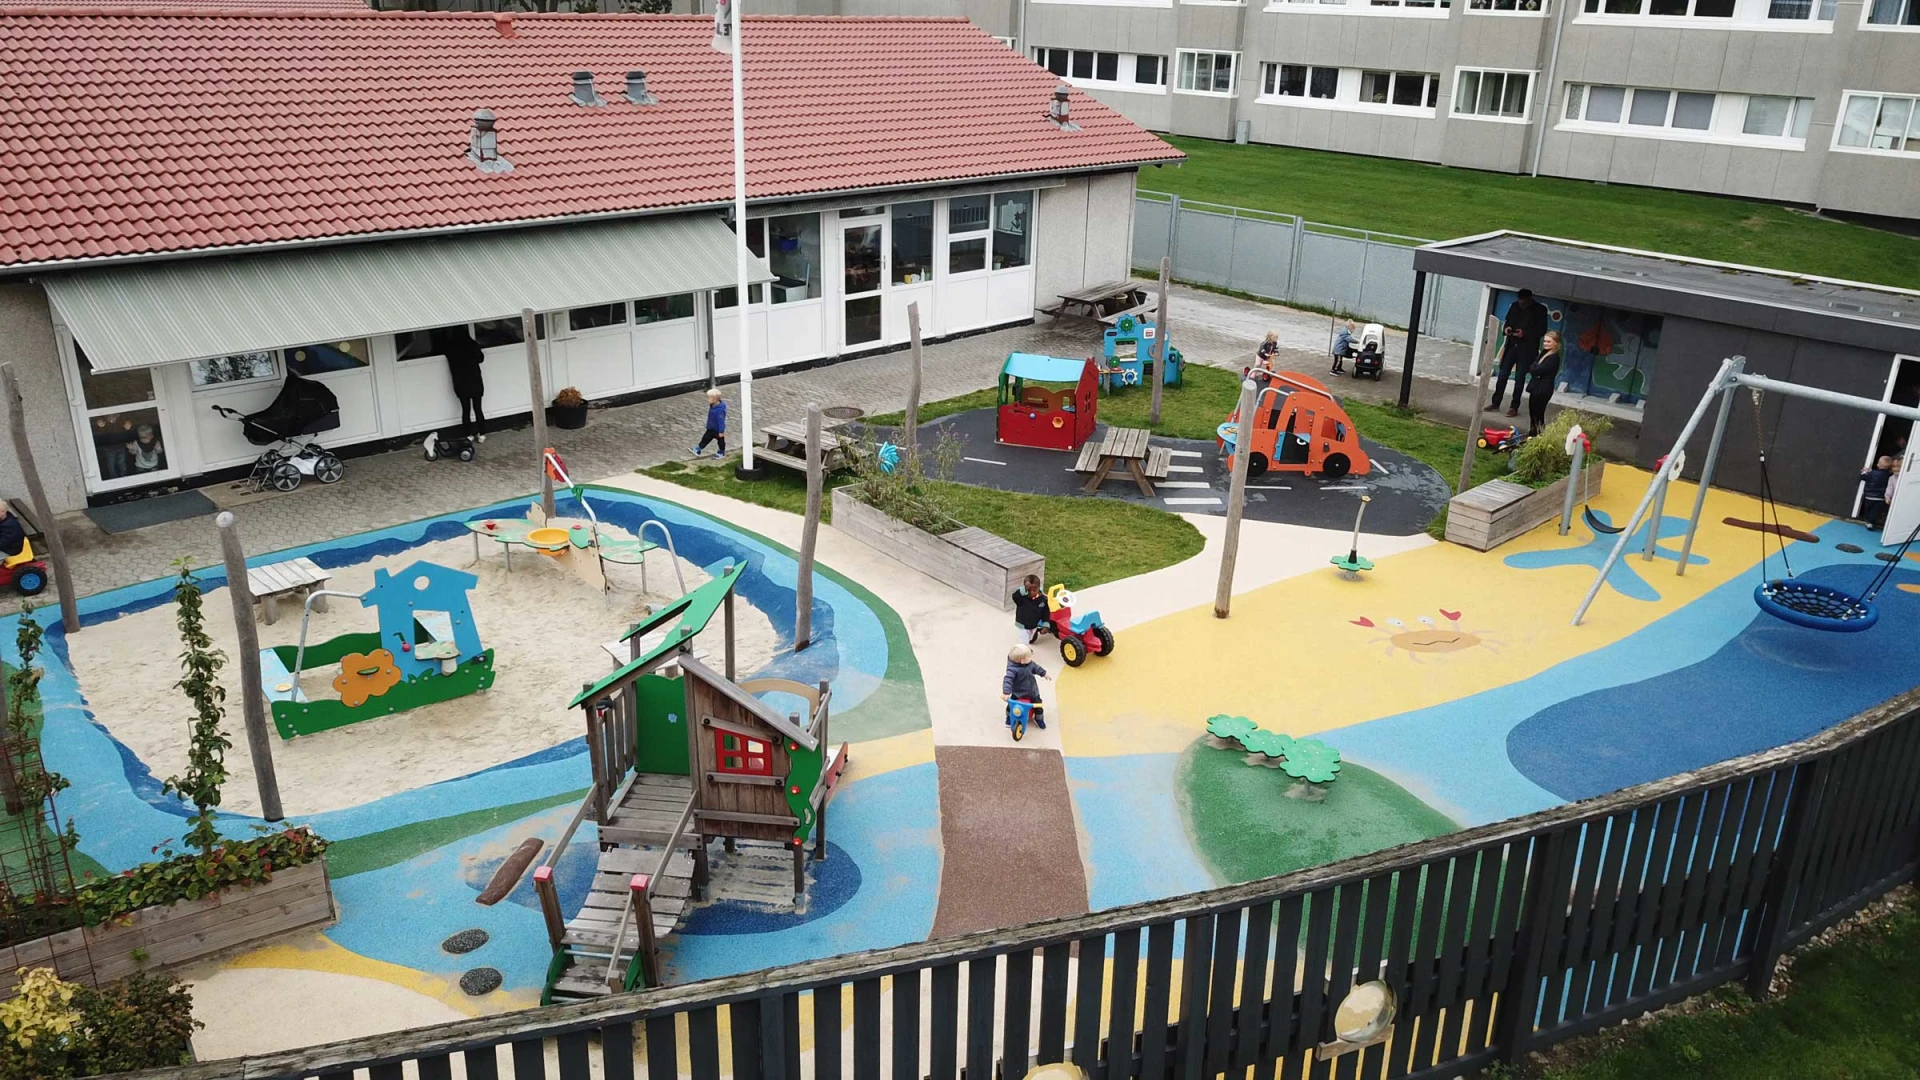 Drone photo of a kindergarten playground in Denmark